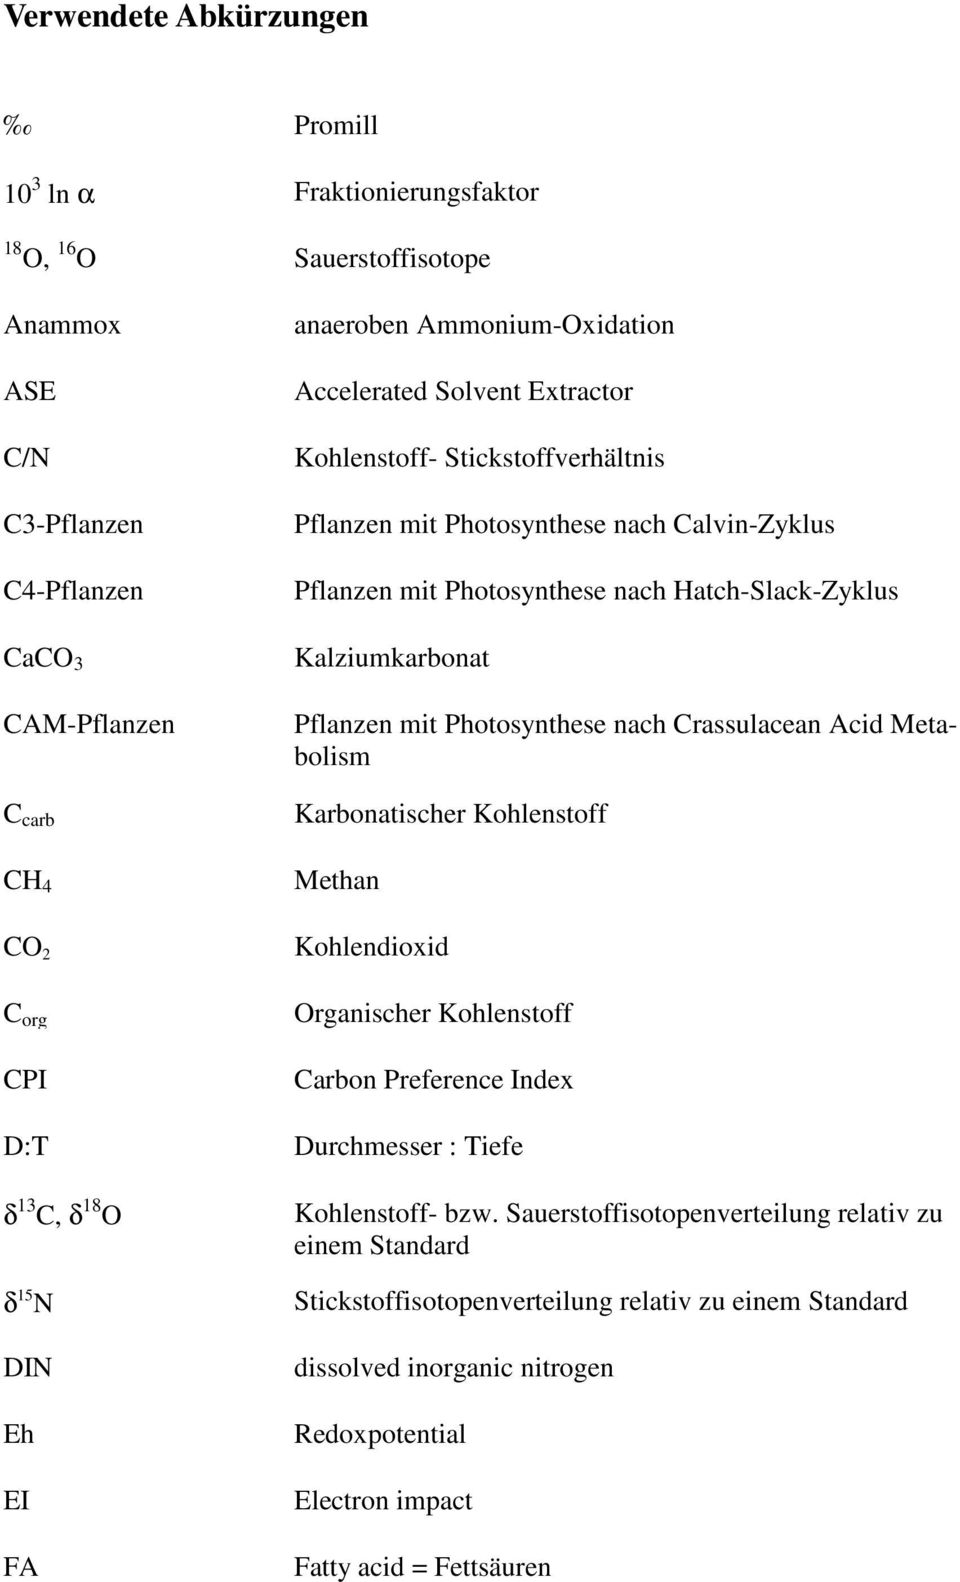 Hatch-Slack-Zyklus Kalziumkarbonat Pflanzen mit Photosynthese nach Crassulacean Acid Metabolism Karbonatischer Kohlenstoff Methan Kohlendioxid Organischer Kohlenstoff Carbon Preference Index